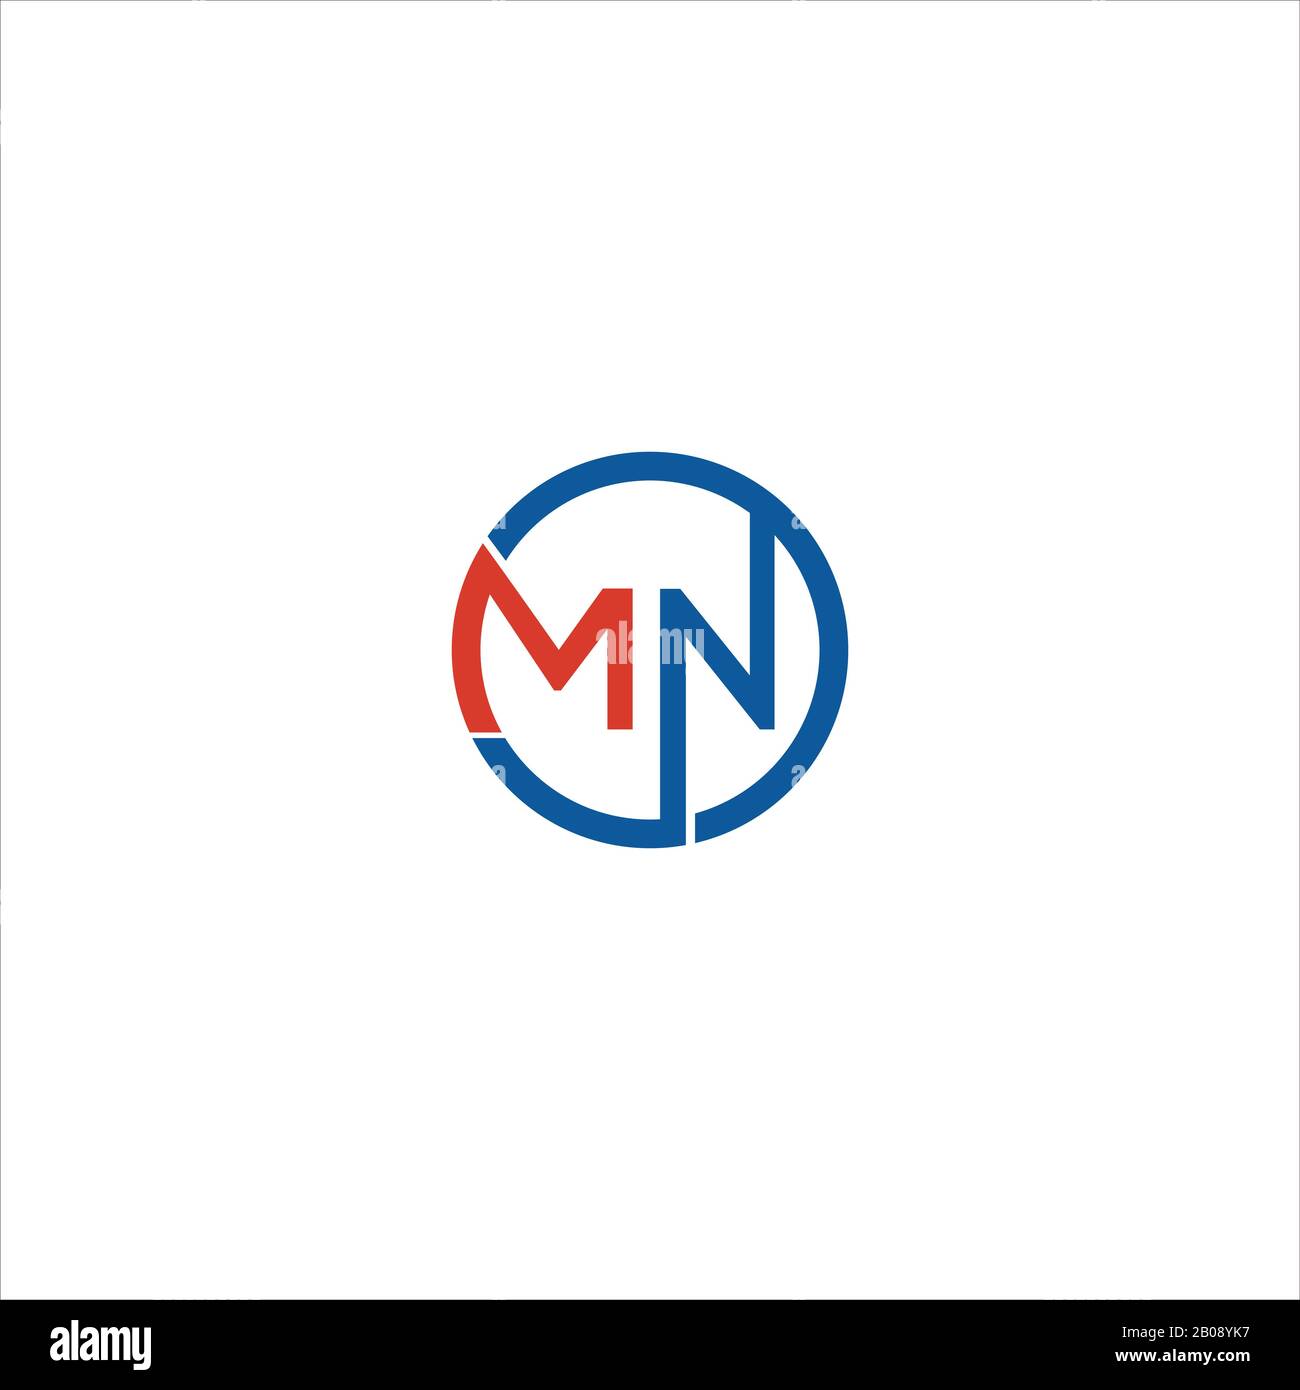 Modello di progettazione vettoriale del logo Mn o nm della lettera iniziale Illustrazione Vettoriale